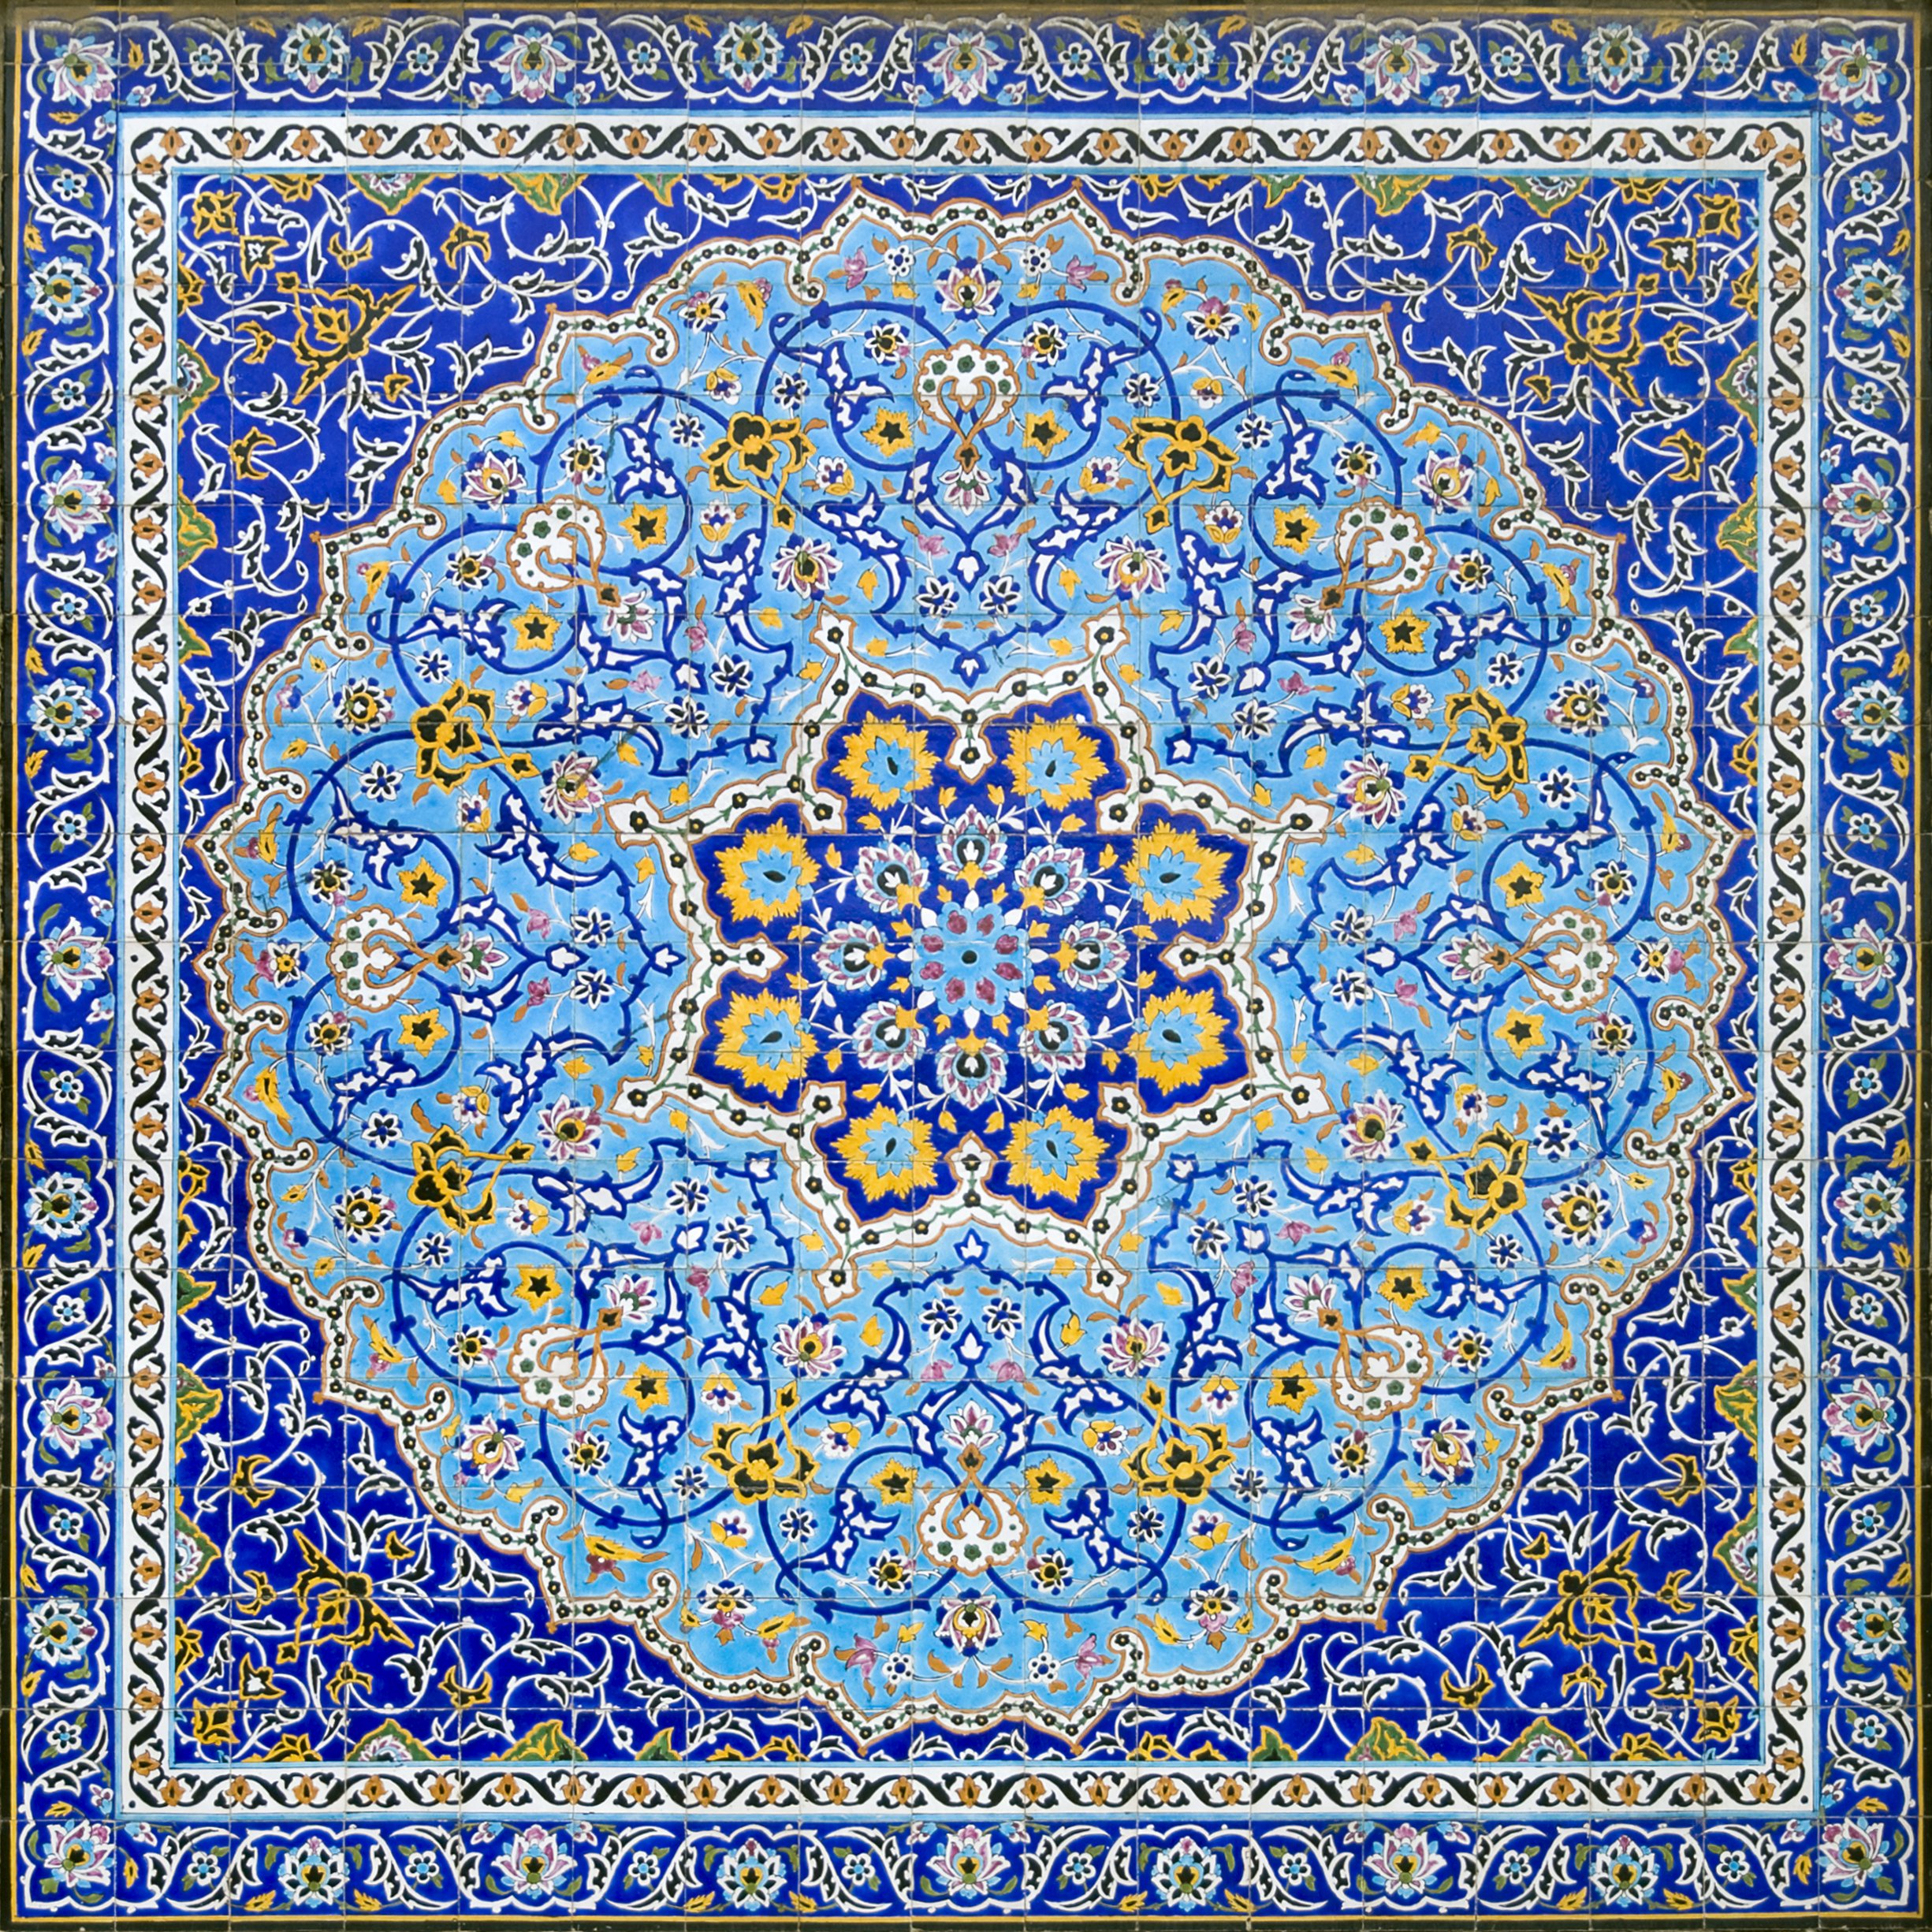 General 2451x2451 Iran painting pattern digital art